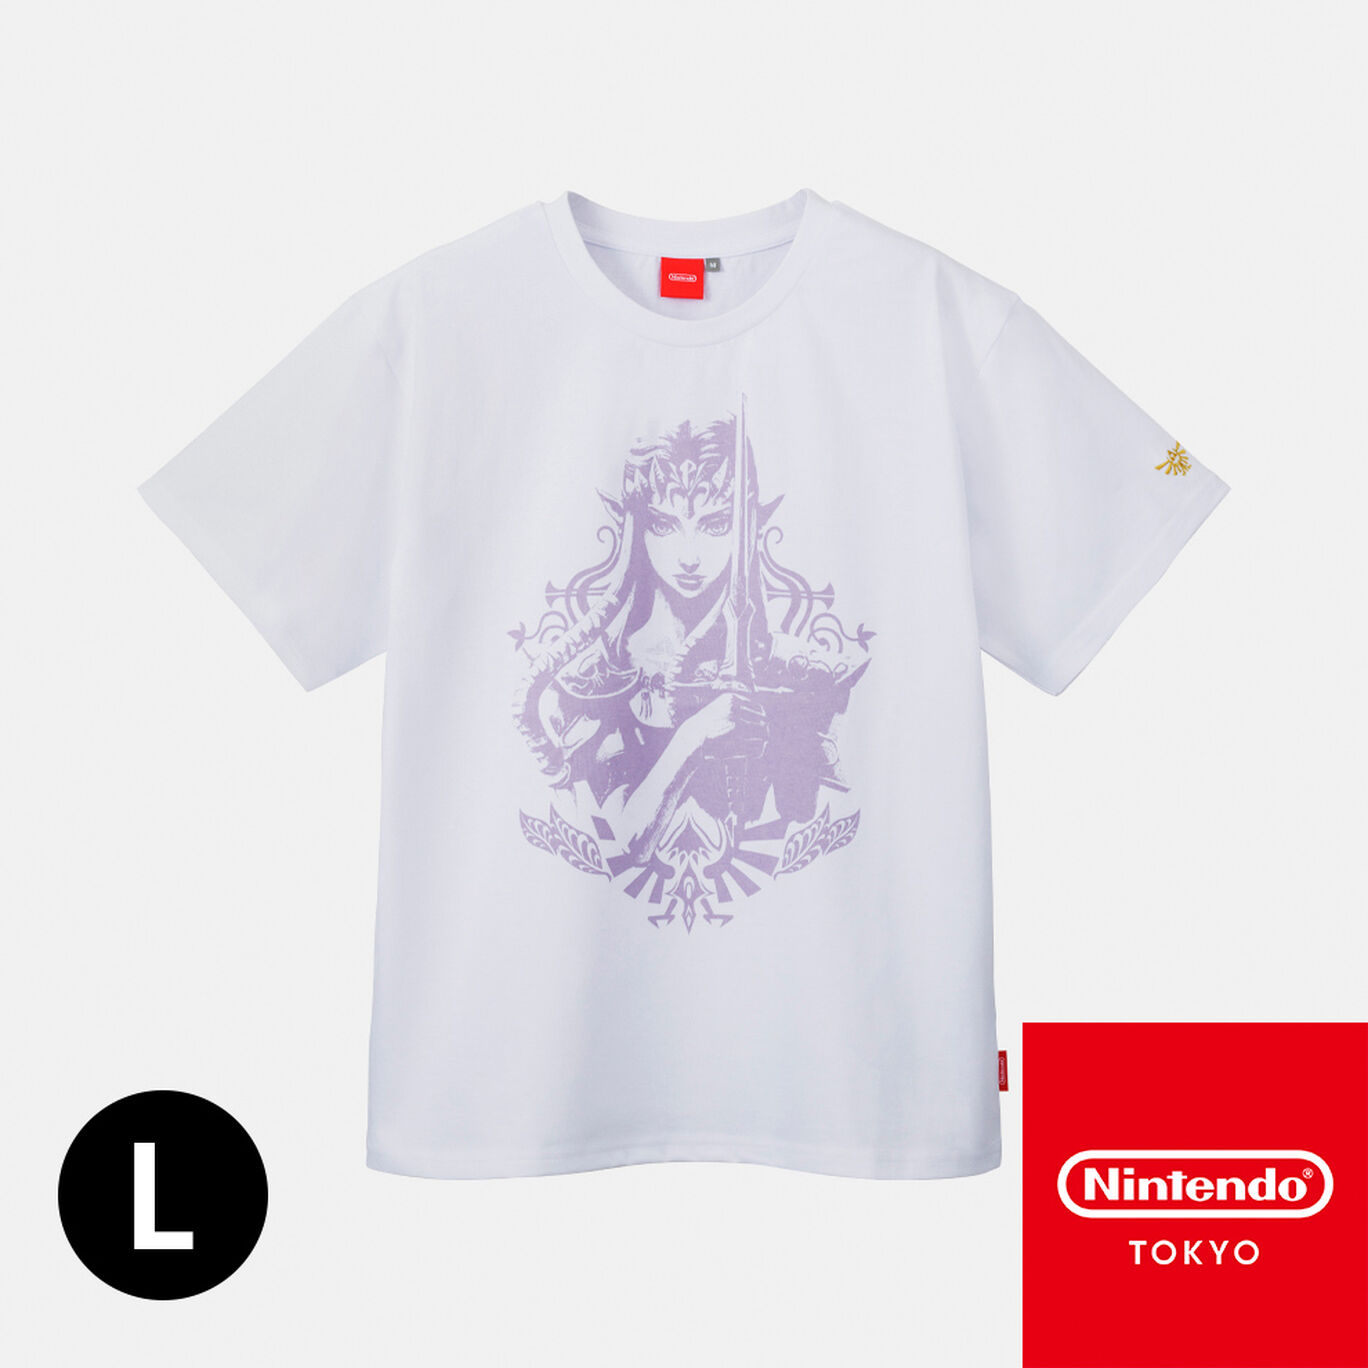 Tシャツ トライフォース ゼルダ L ゼルダの伝説【Nintendo TOKYO取り扱い商品】